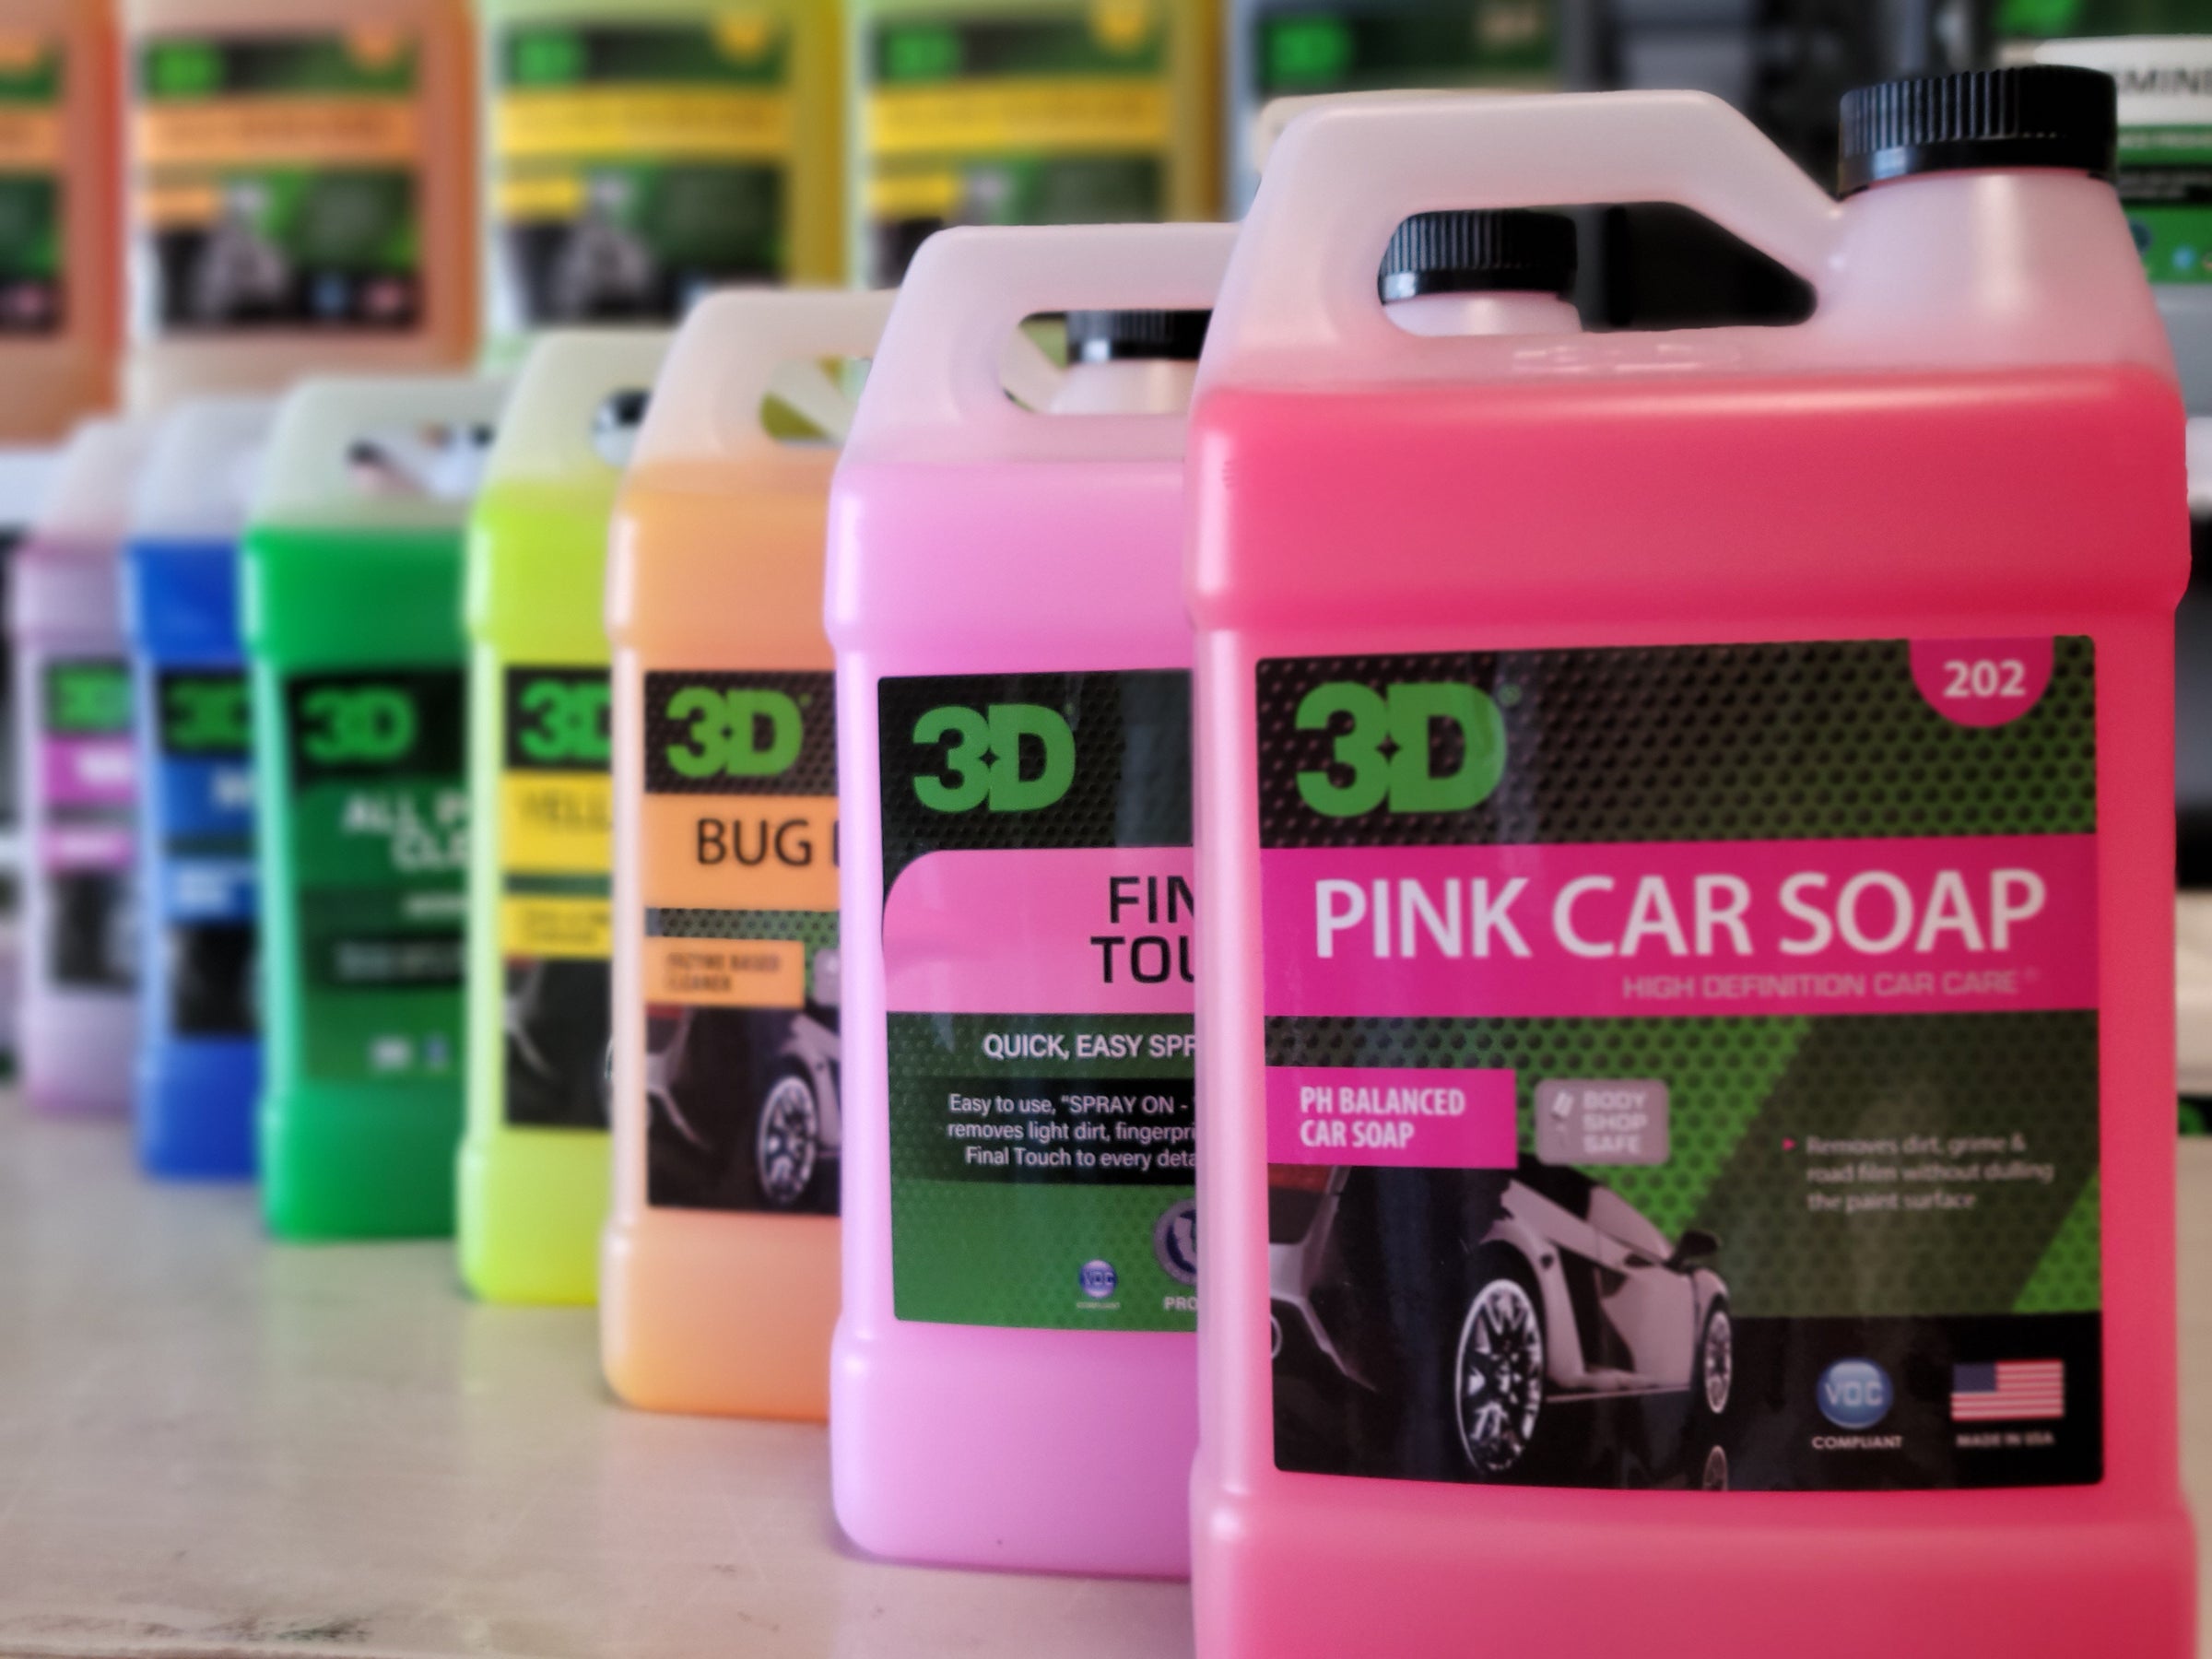 3D Pink Car Soap 1 Gallon Car